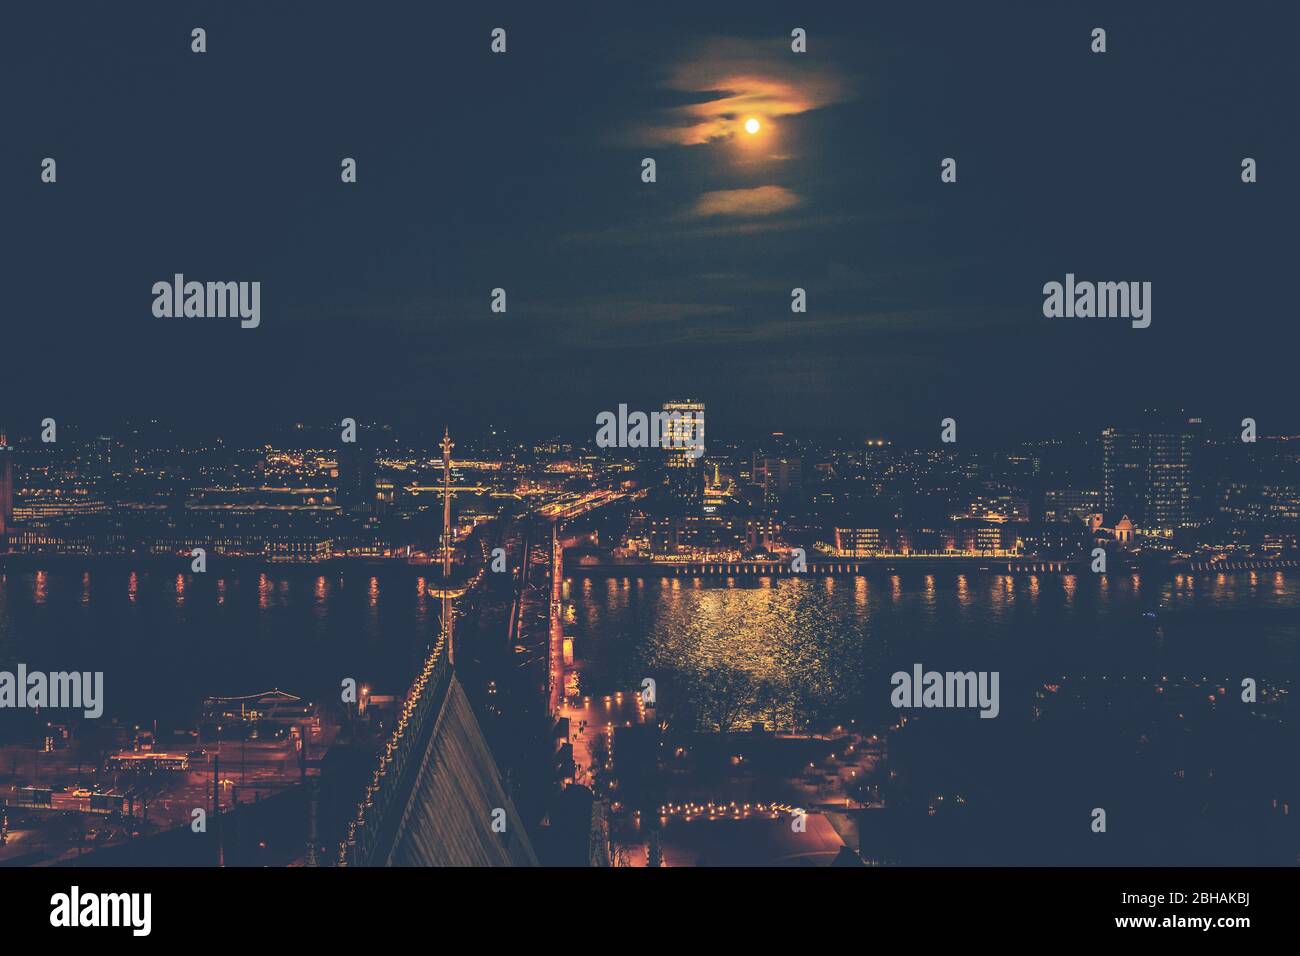 Ausblick über das beleuchtete Köln, das Rheinufer bei Nacht. Stock Photo